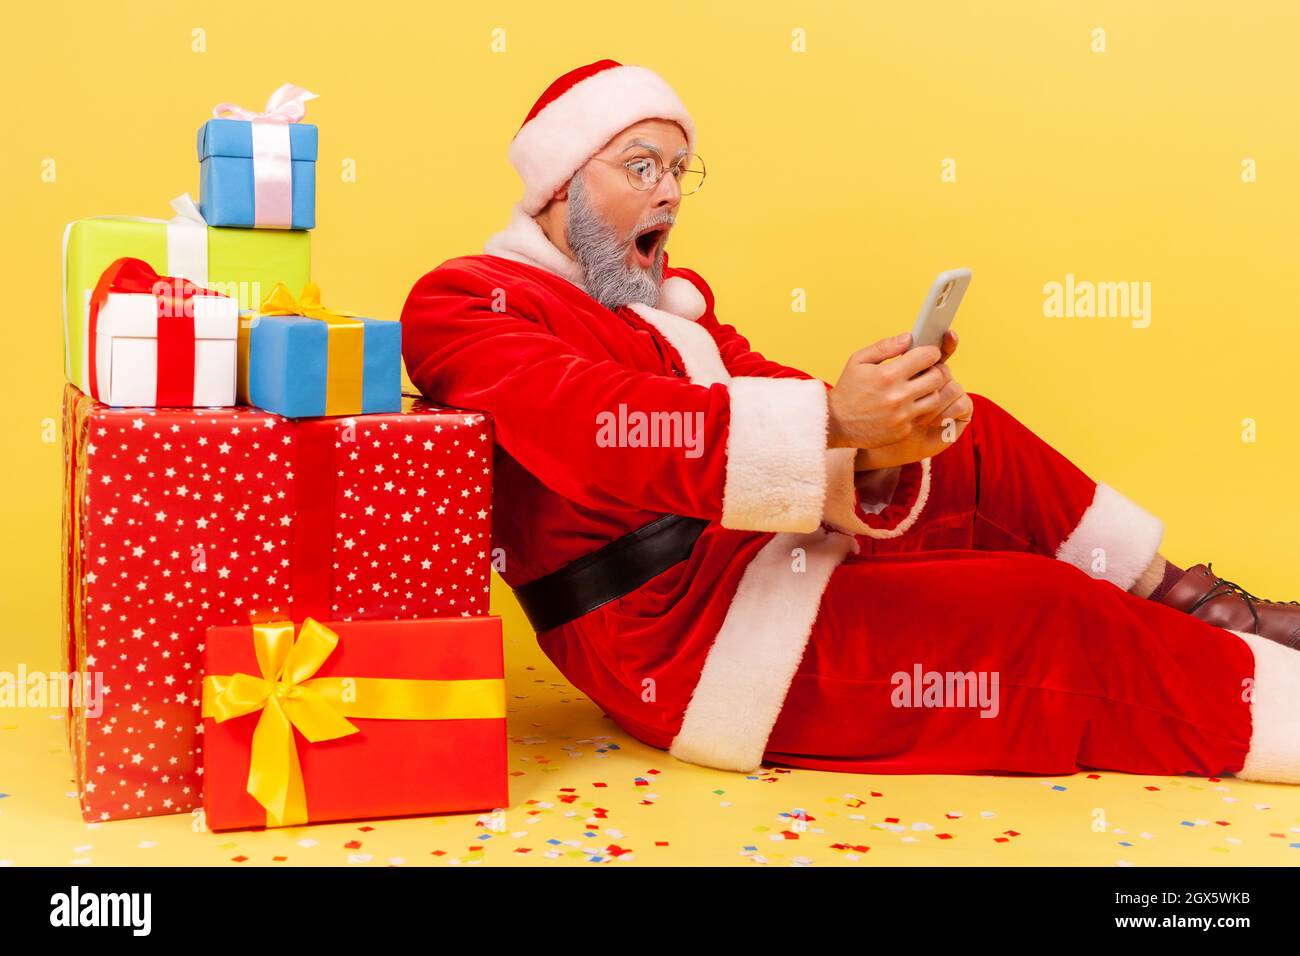 Seitenansicht eines älteren Mannes mit grauem Bart, der das weihnachtsmann-Kostüm trägt, der in der Nähe von Neujahrsgeschenken sitzt und mit dem Smartphone eine schockierende Nachricht liest. Innenaufnahme des Studios isoliert auf gelbem Hintergrund. Stockfoto